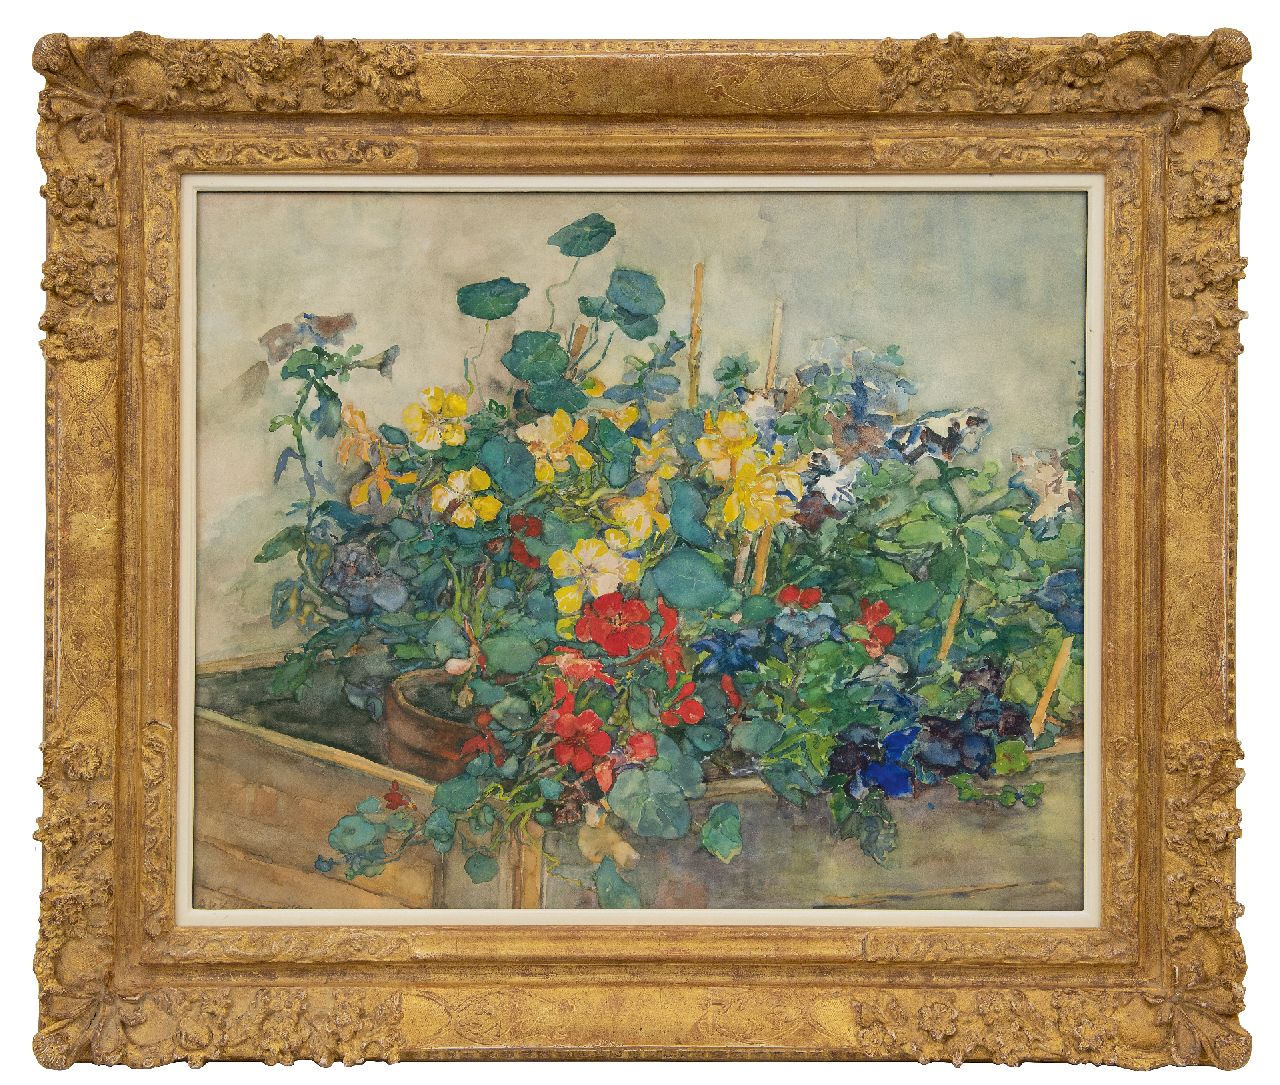 Akkeringa J.E.H.  | 'Johannes Evert' Hendrik Akkeringa, Summer flowers, watercolour and gouache on paper 54.1 x 67.0 cm, signed l.l.